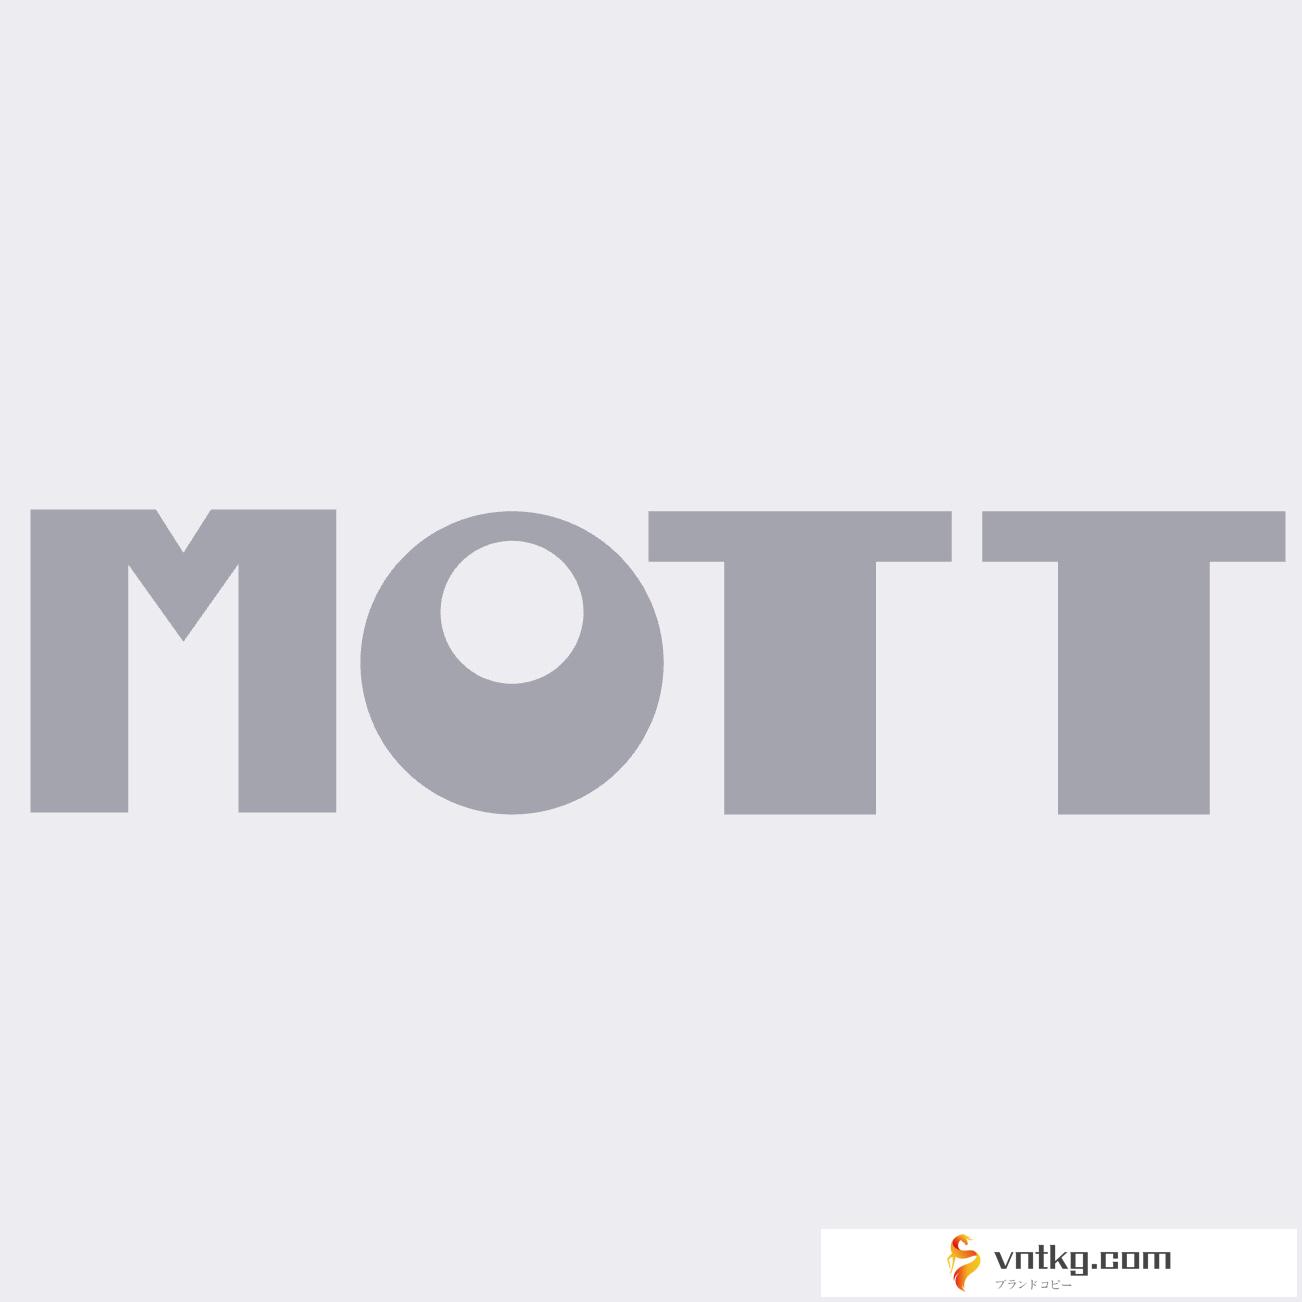 MOTT